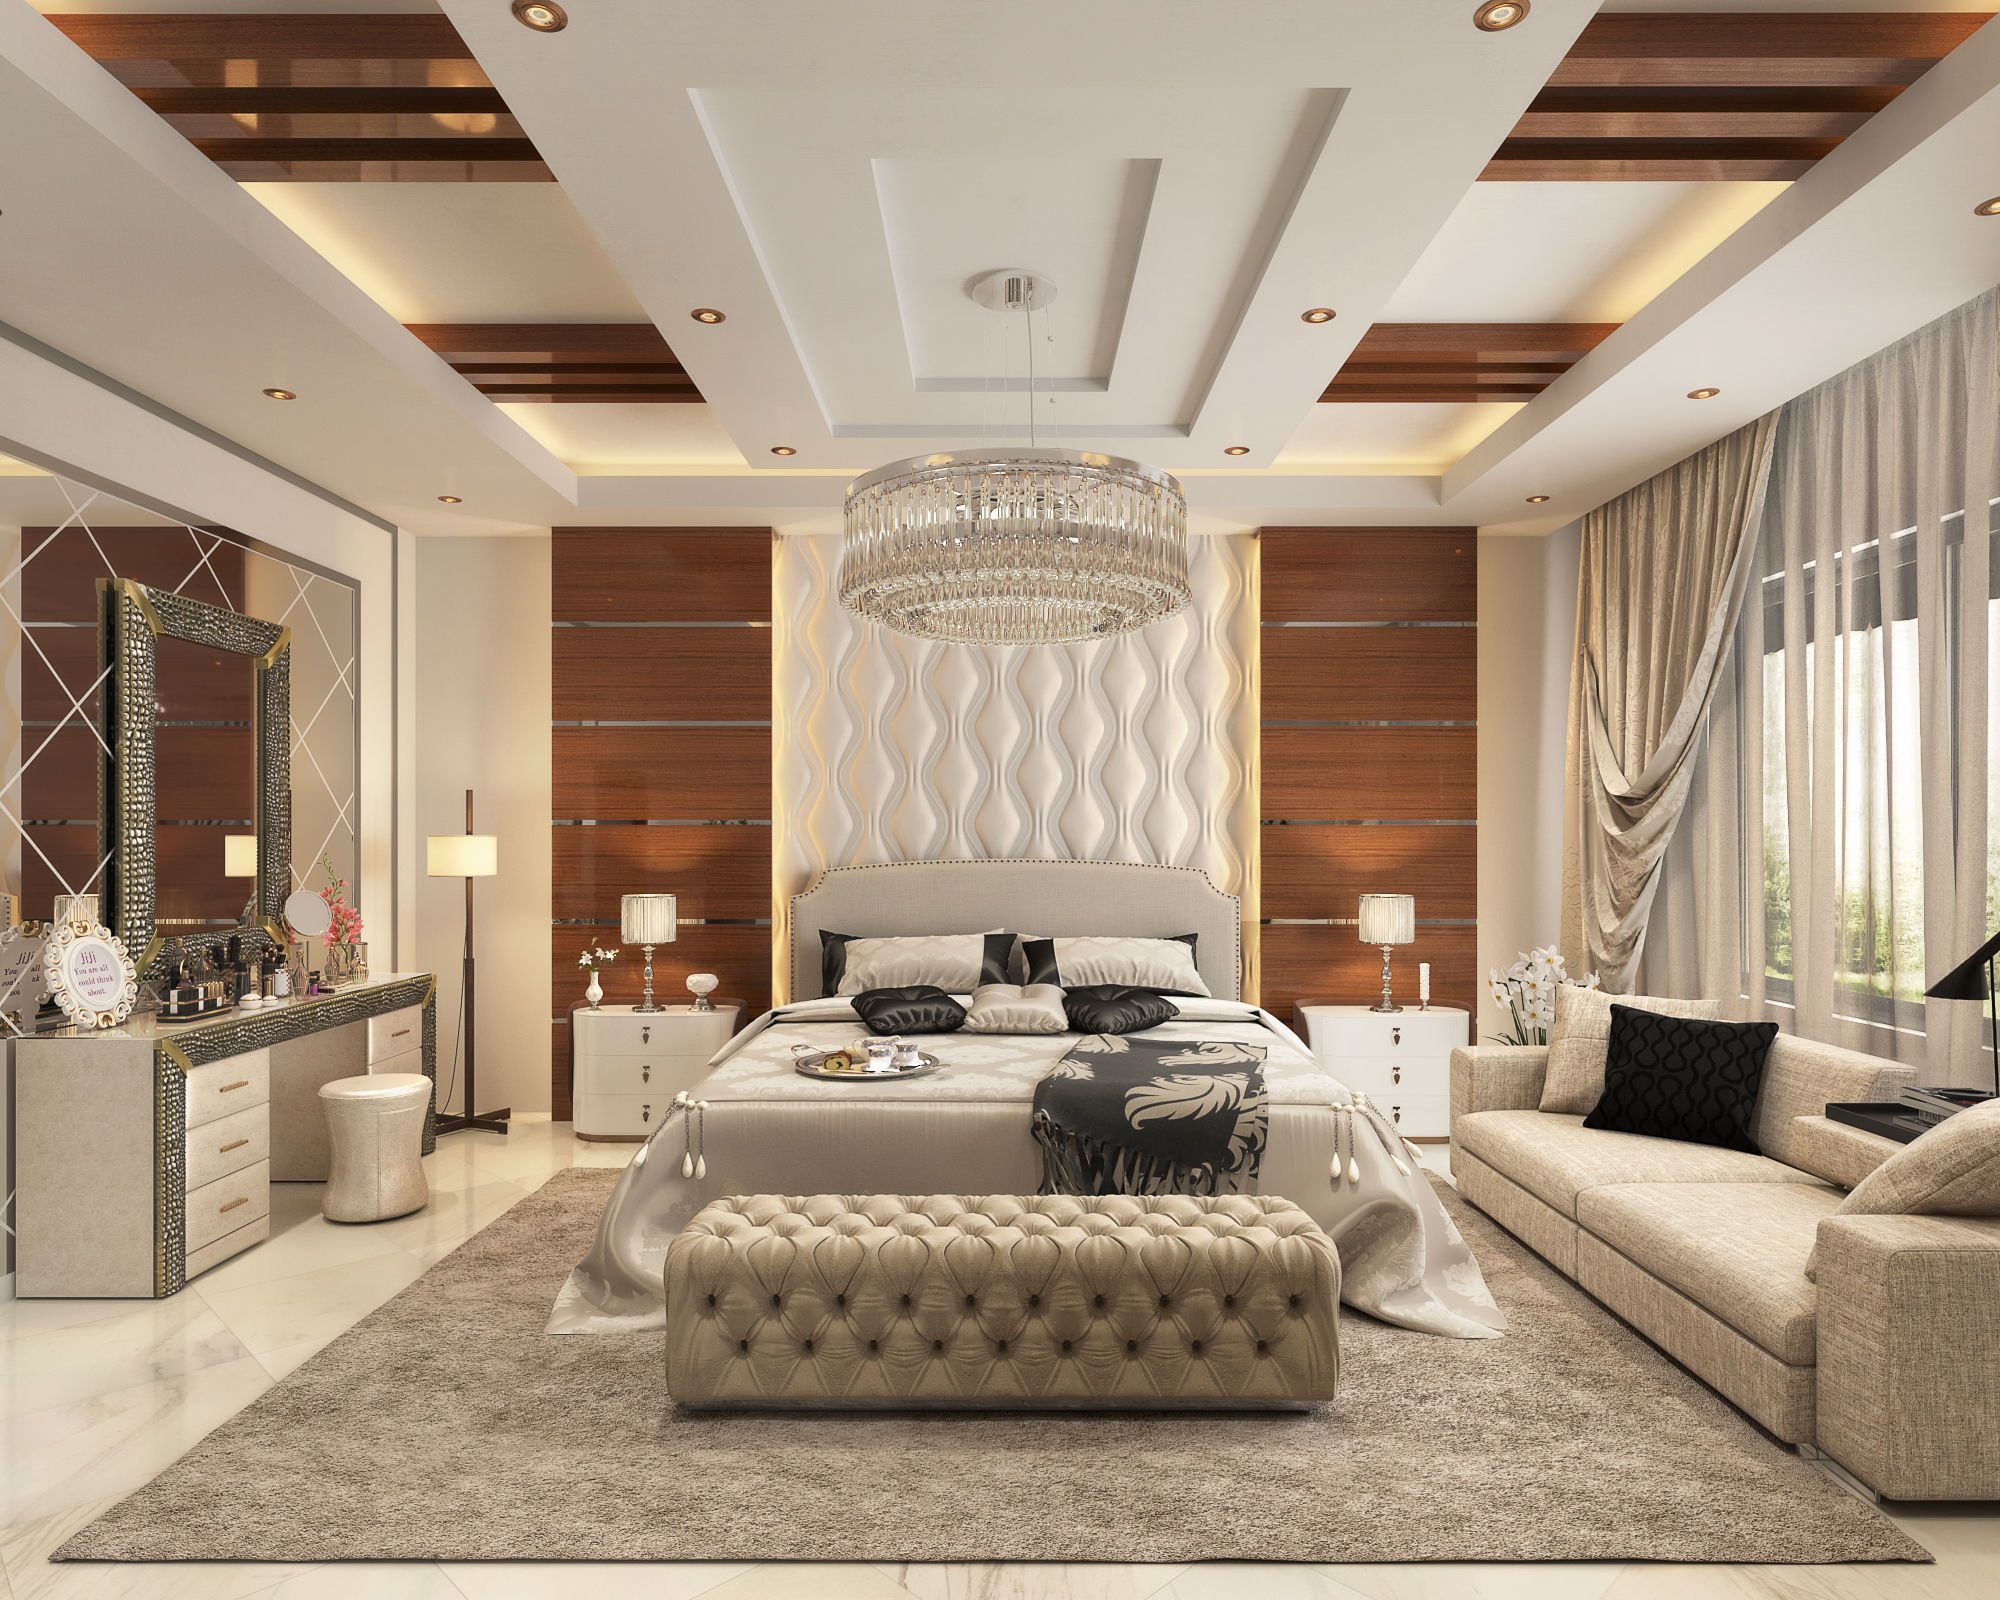 12x15 feet Master Bedroom Interior Design Dwnload Free Sketchup Model 2020  - KK Home Design